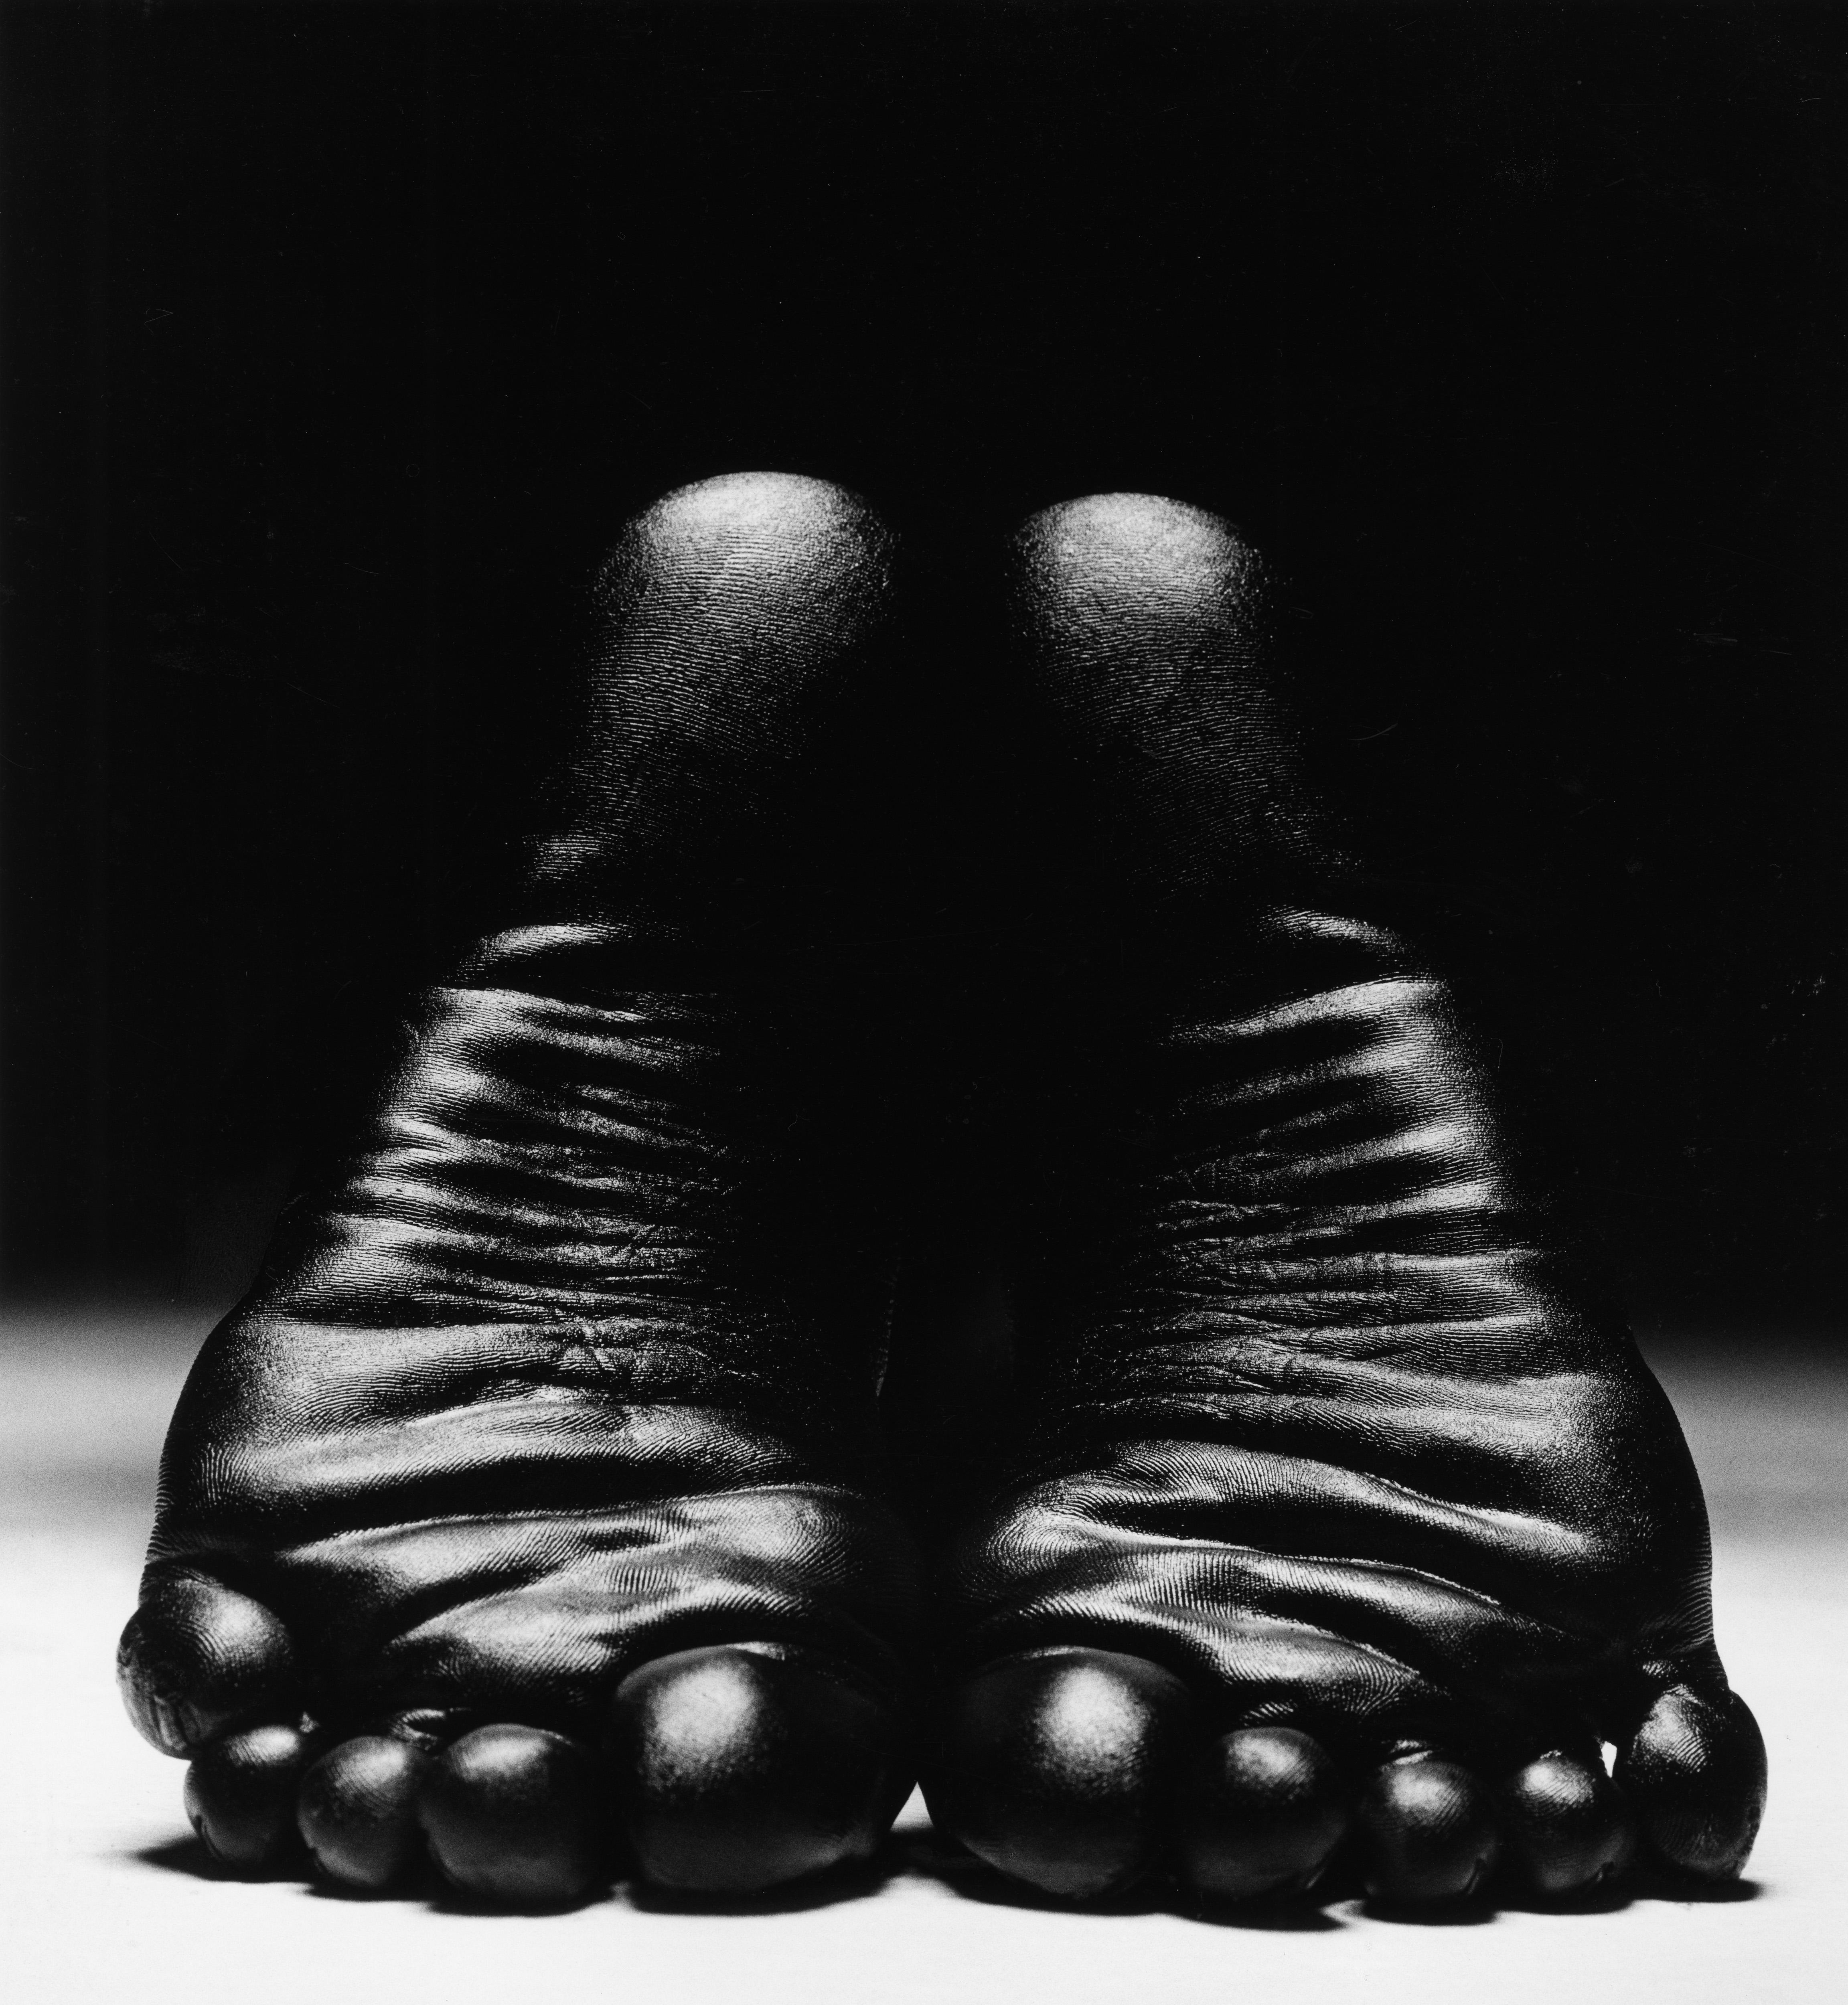 Thierry Le Gouès Nude Photograph - Adia, Paris 1997